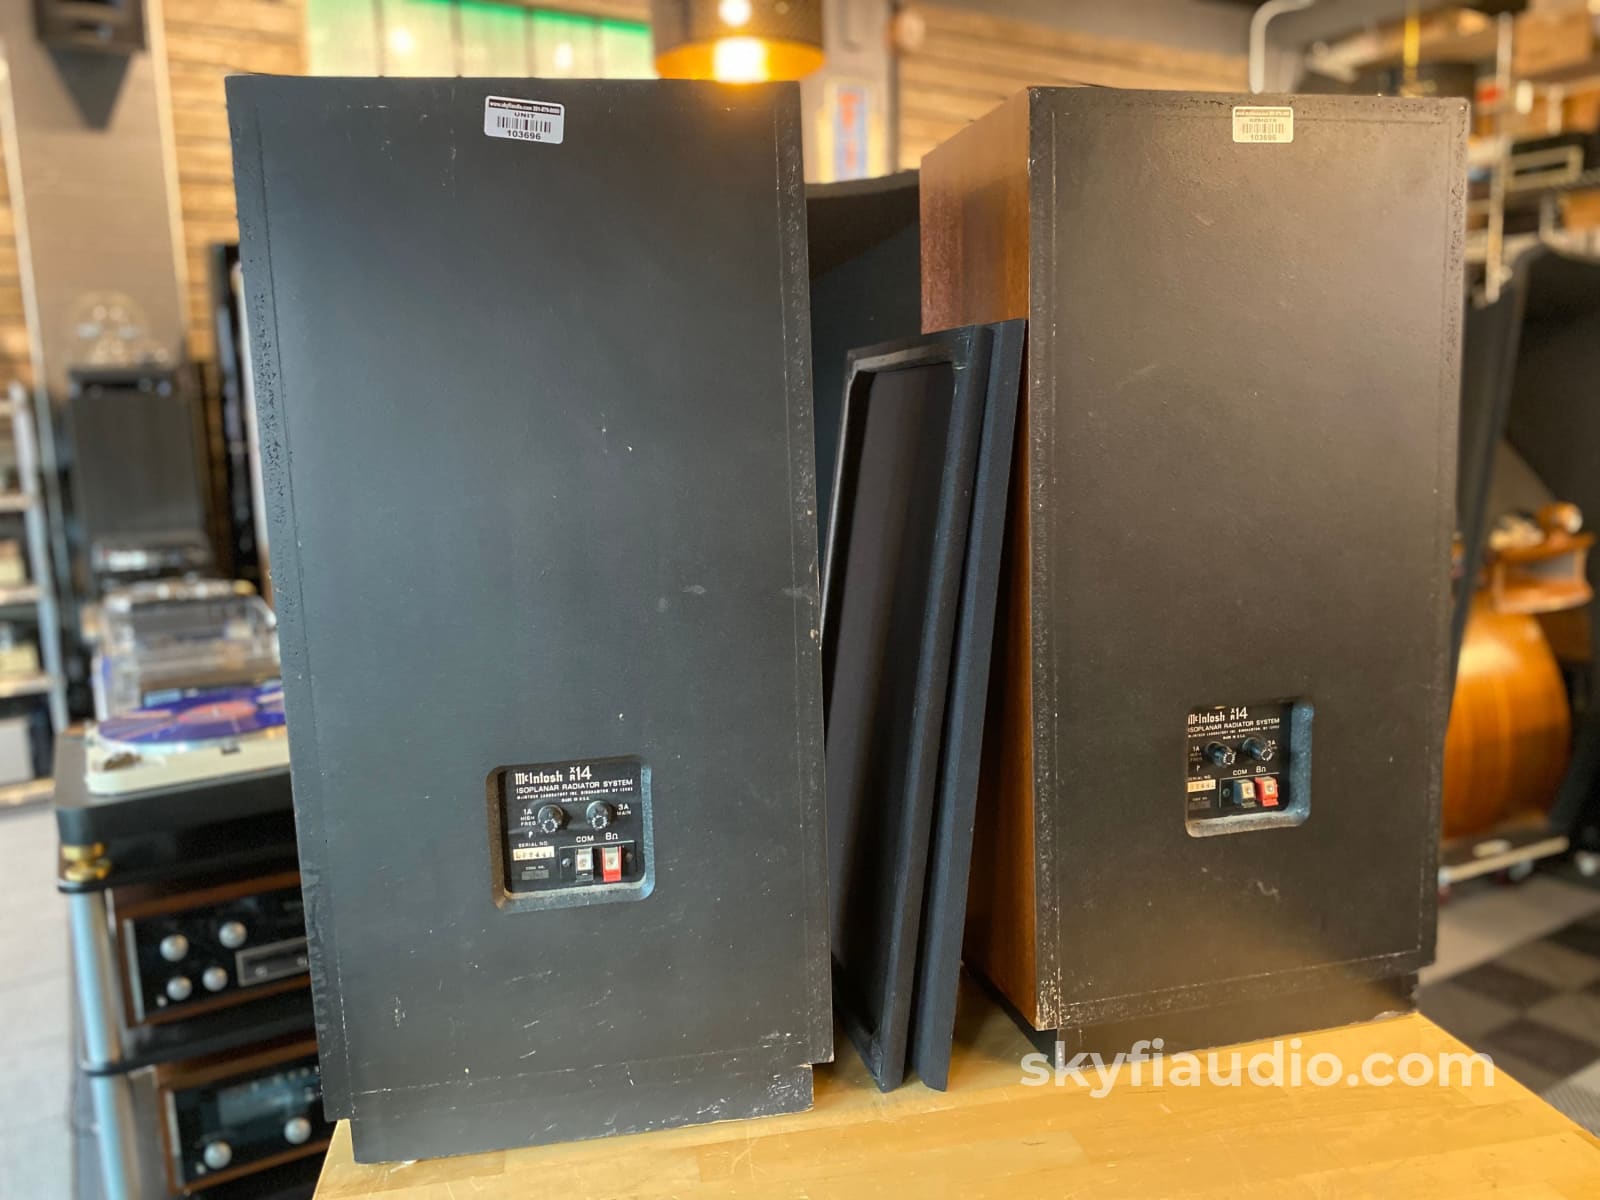 Mcintosh Xr14 Vintage 4-Way Isoplanar Radiator Speakers - Refurbished